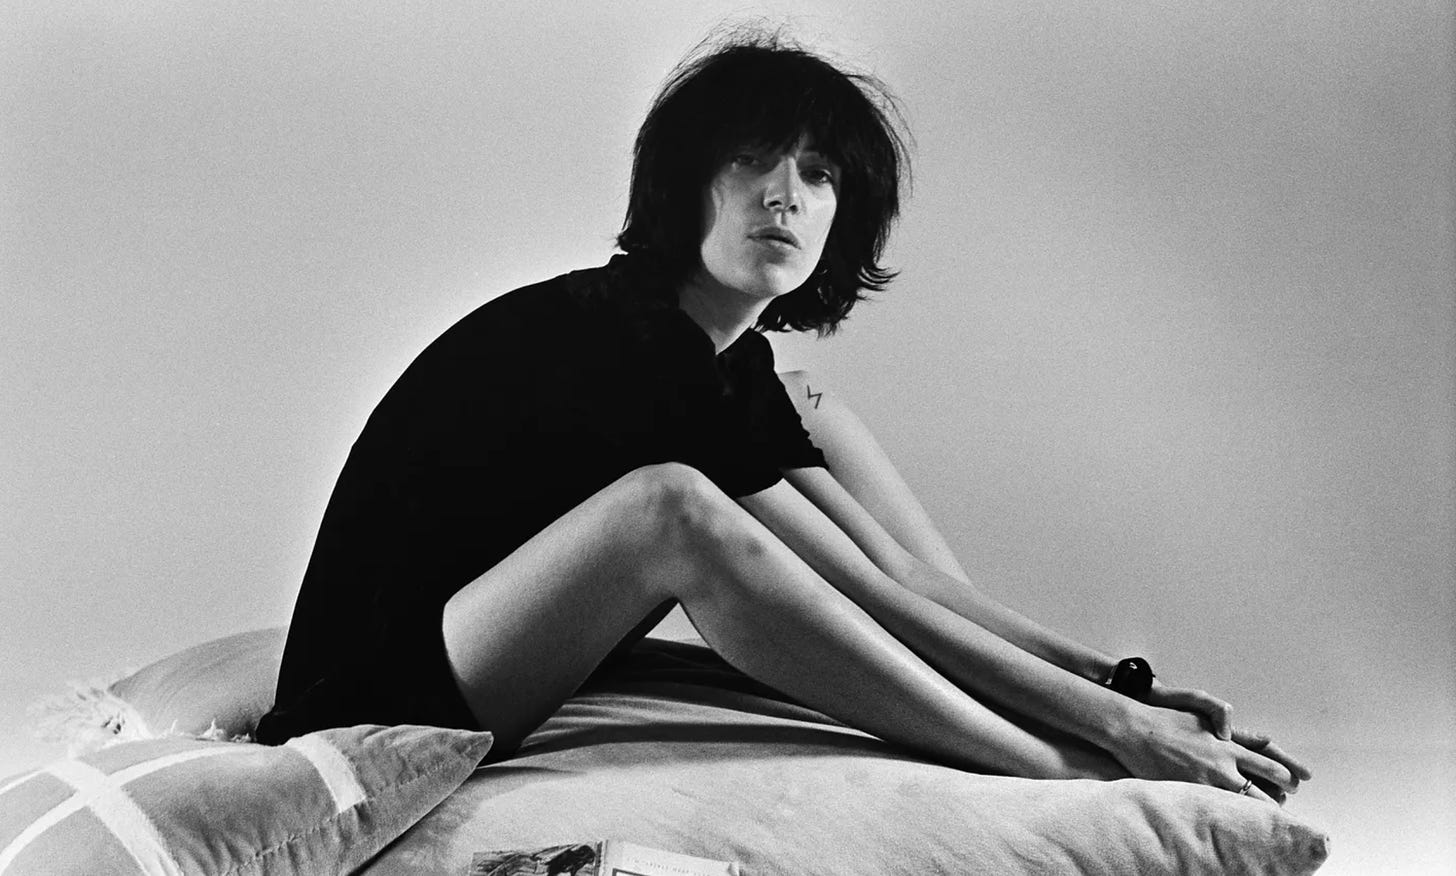 Patti Smith jovem, sentada numa cama de lado, olhando para a câmera. Está vestida apenas com uma camiseta preta, tem cabelos nos ombros e está com o corpo curvado em direção aos pés. Foto p&b